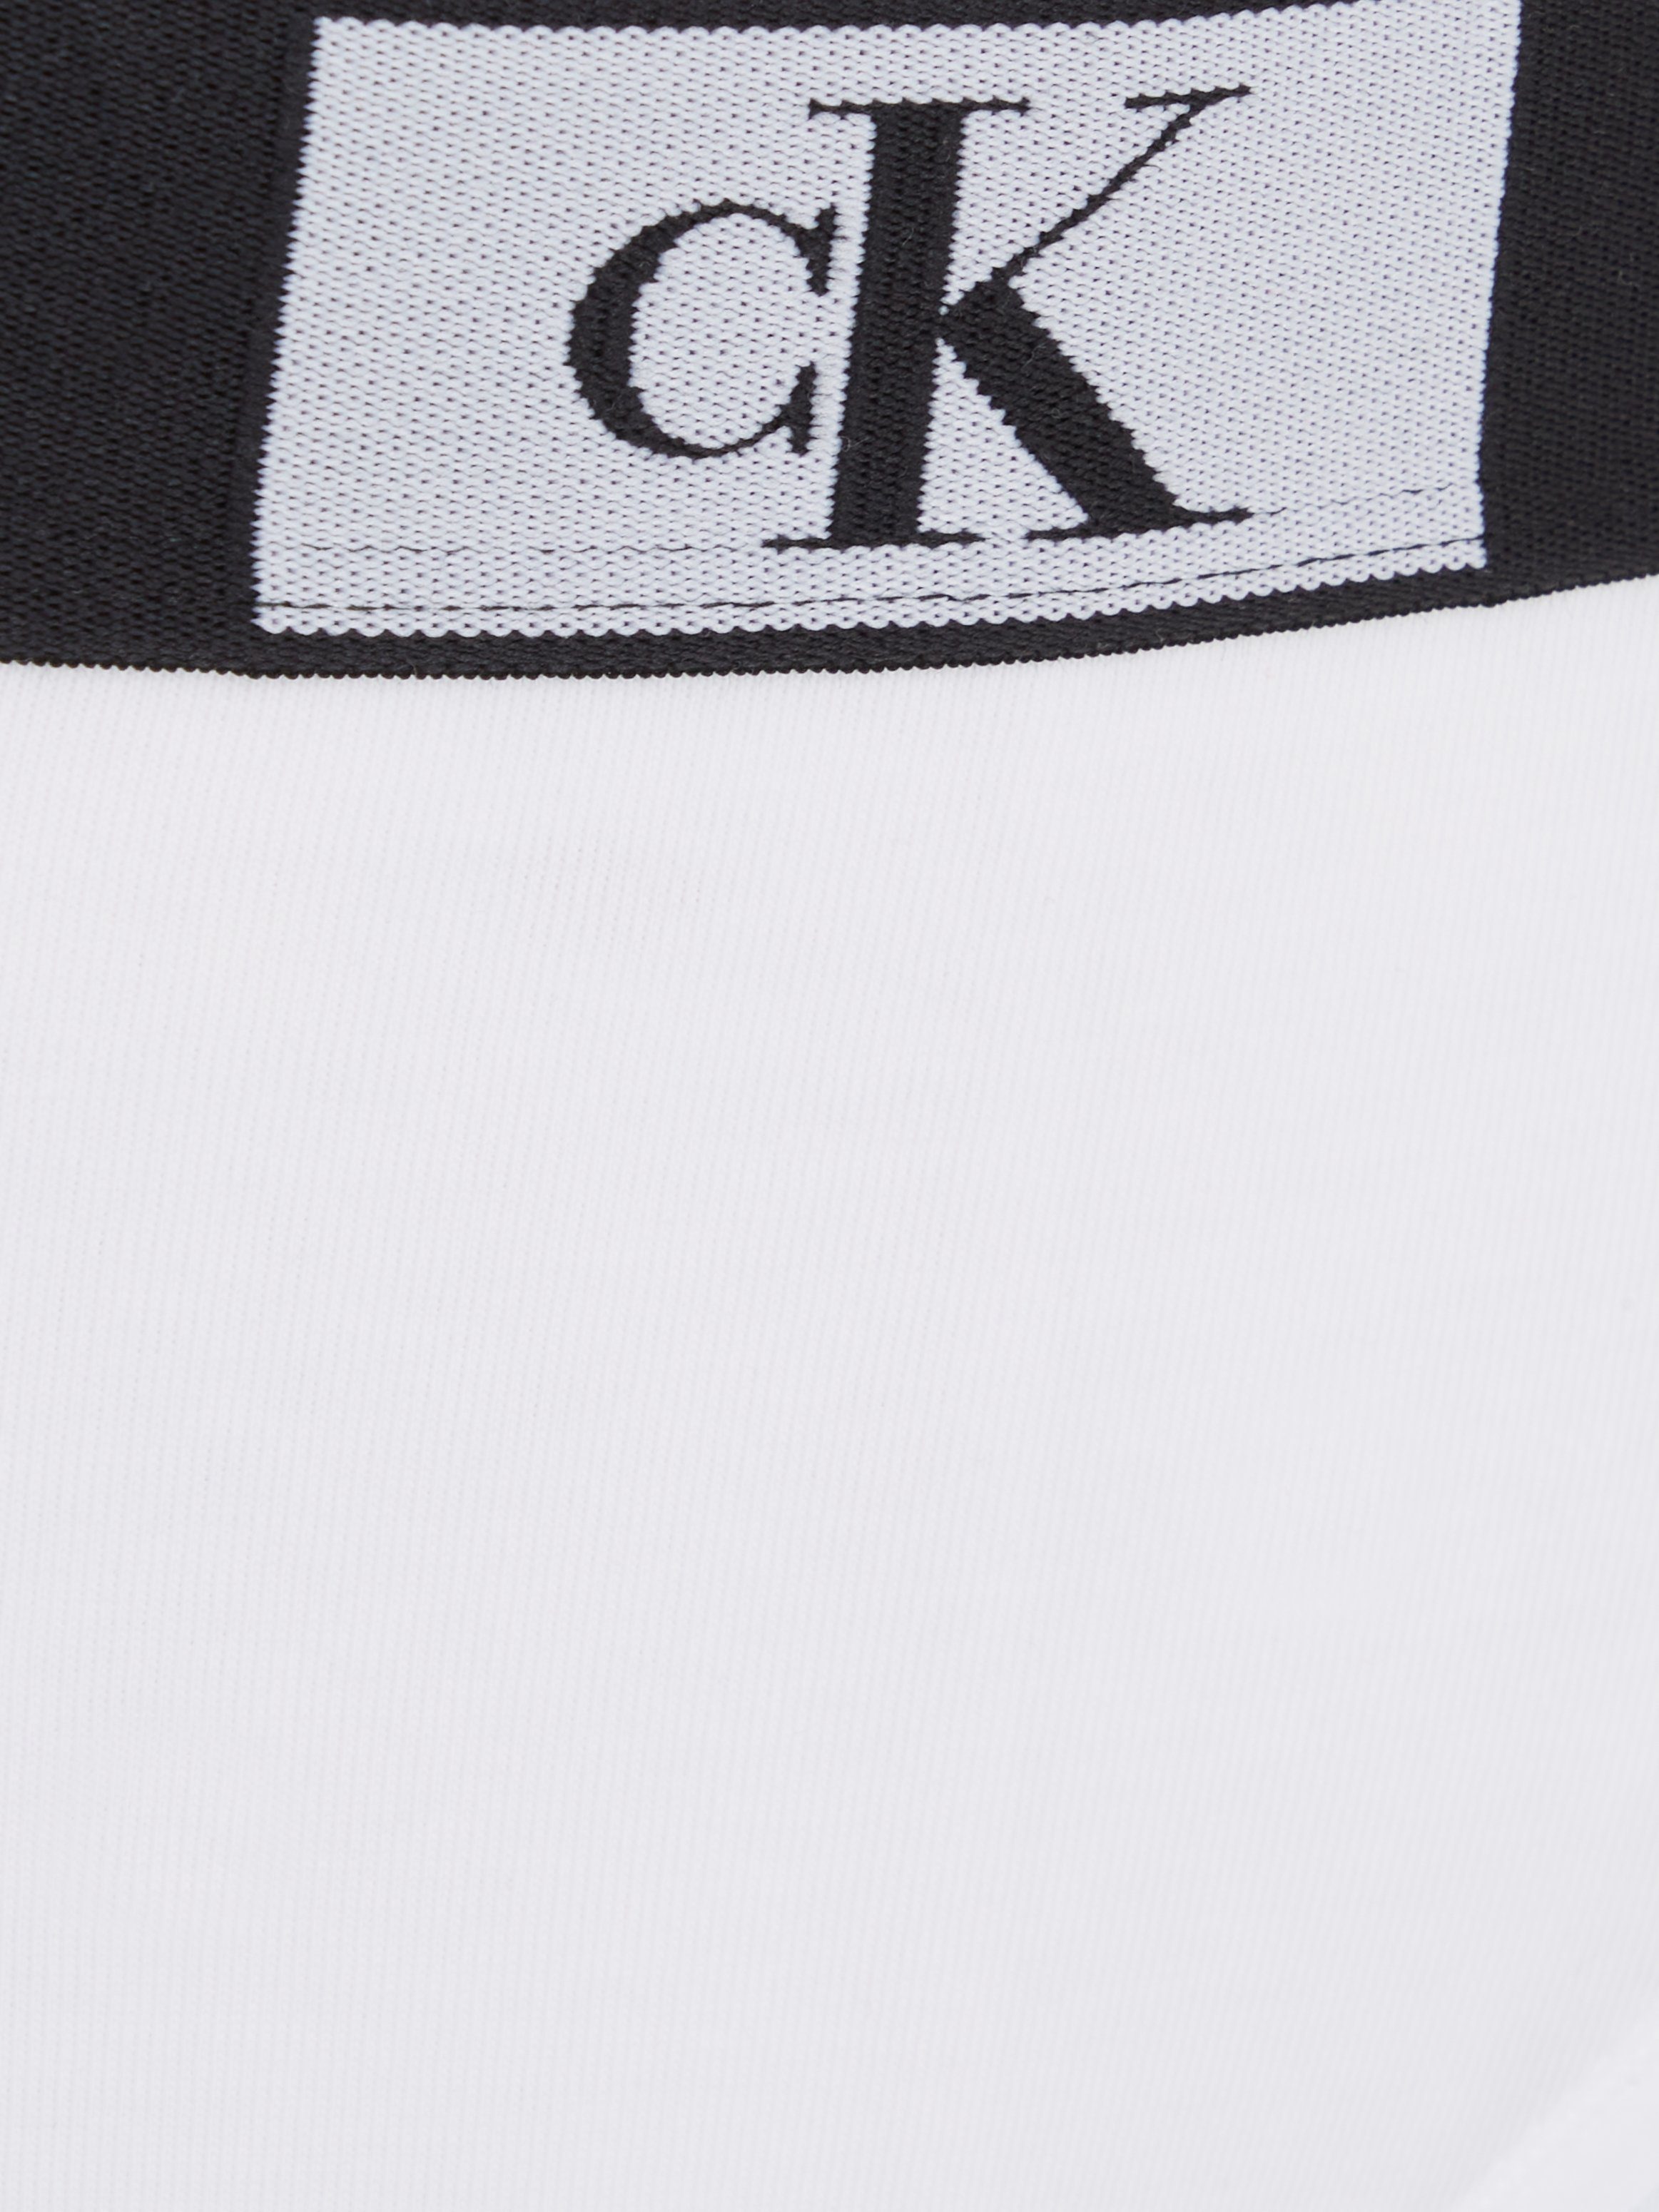 Calvin Klein Underwear Bikinislip mit Allover-Muster weiß